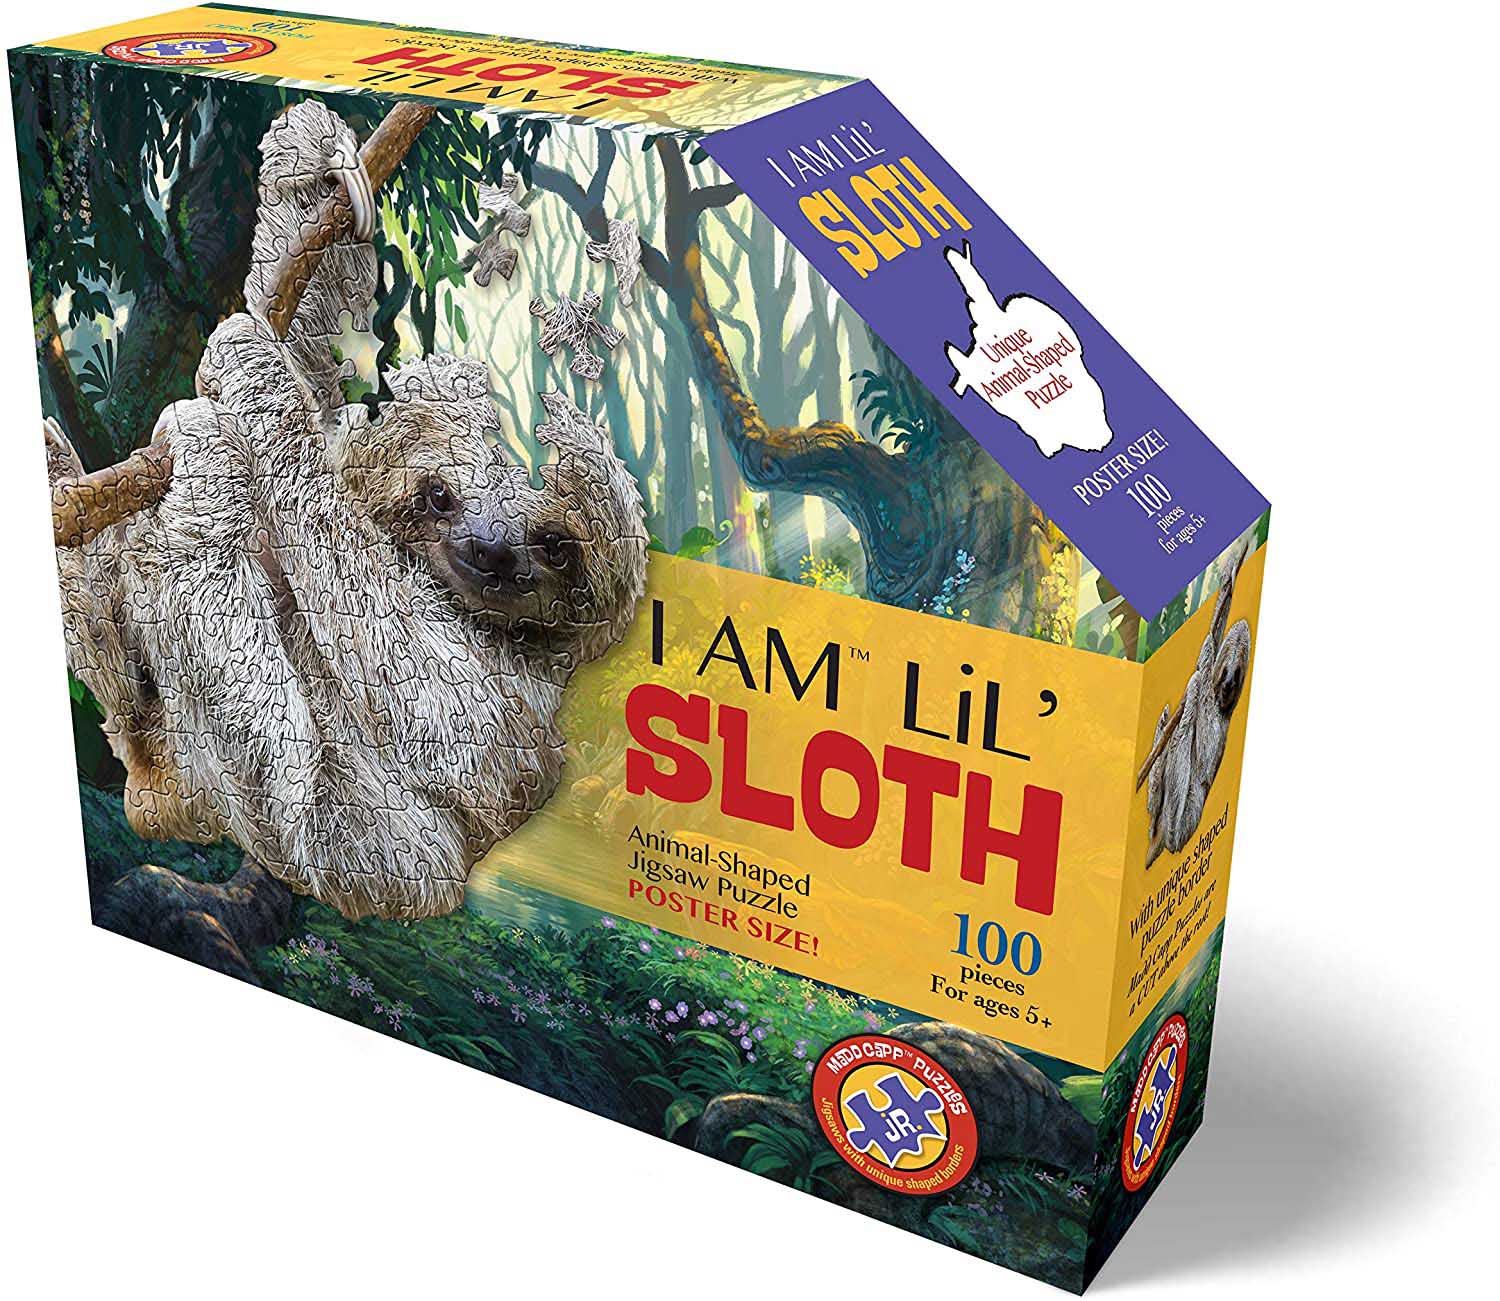 I Am Lil' Sloth